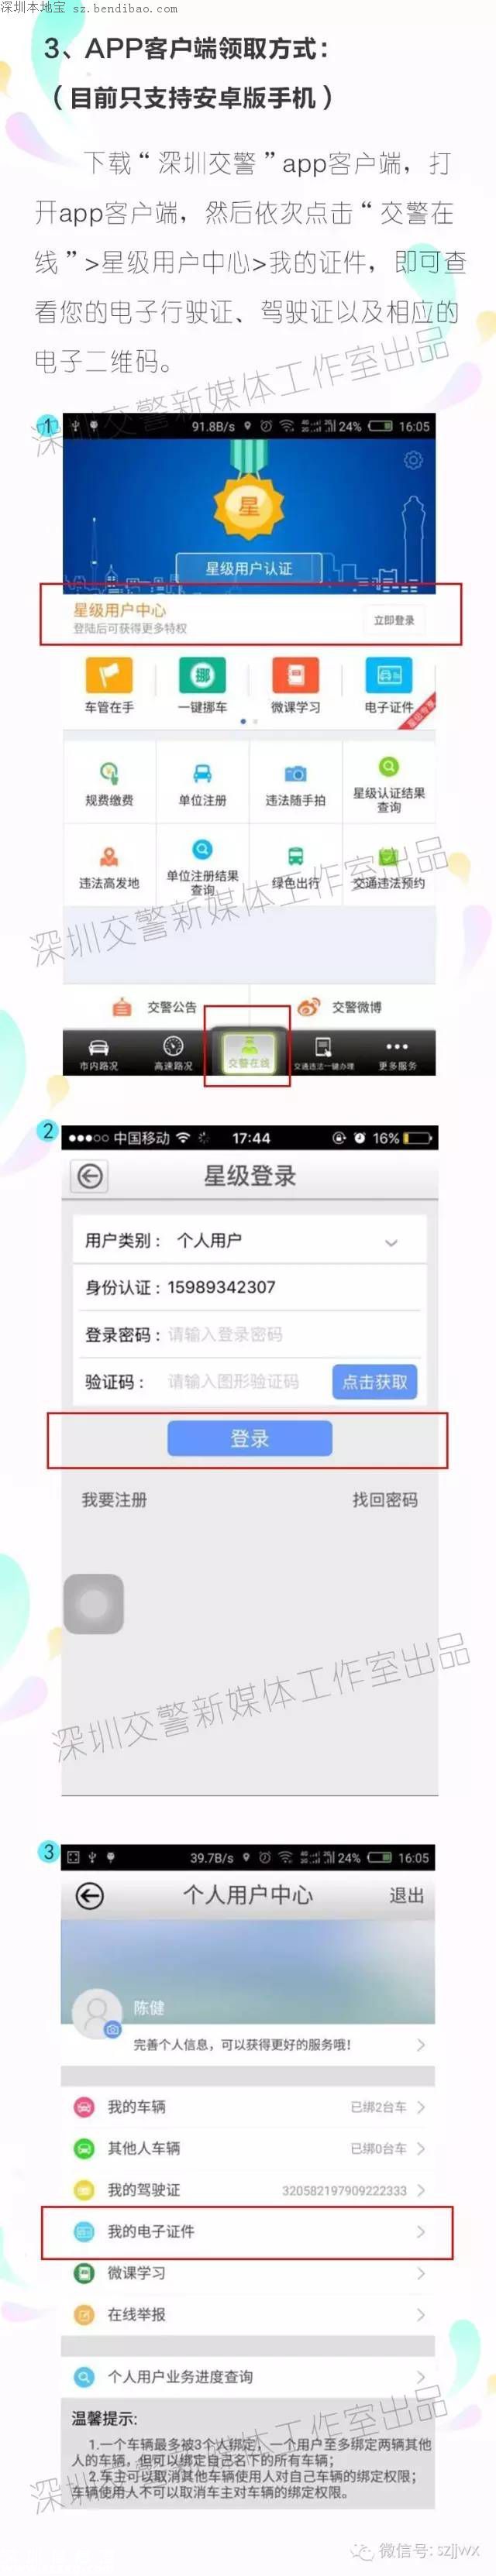 深圳电子驾驶证上线 开车上街不用带驾照